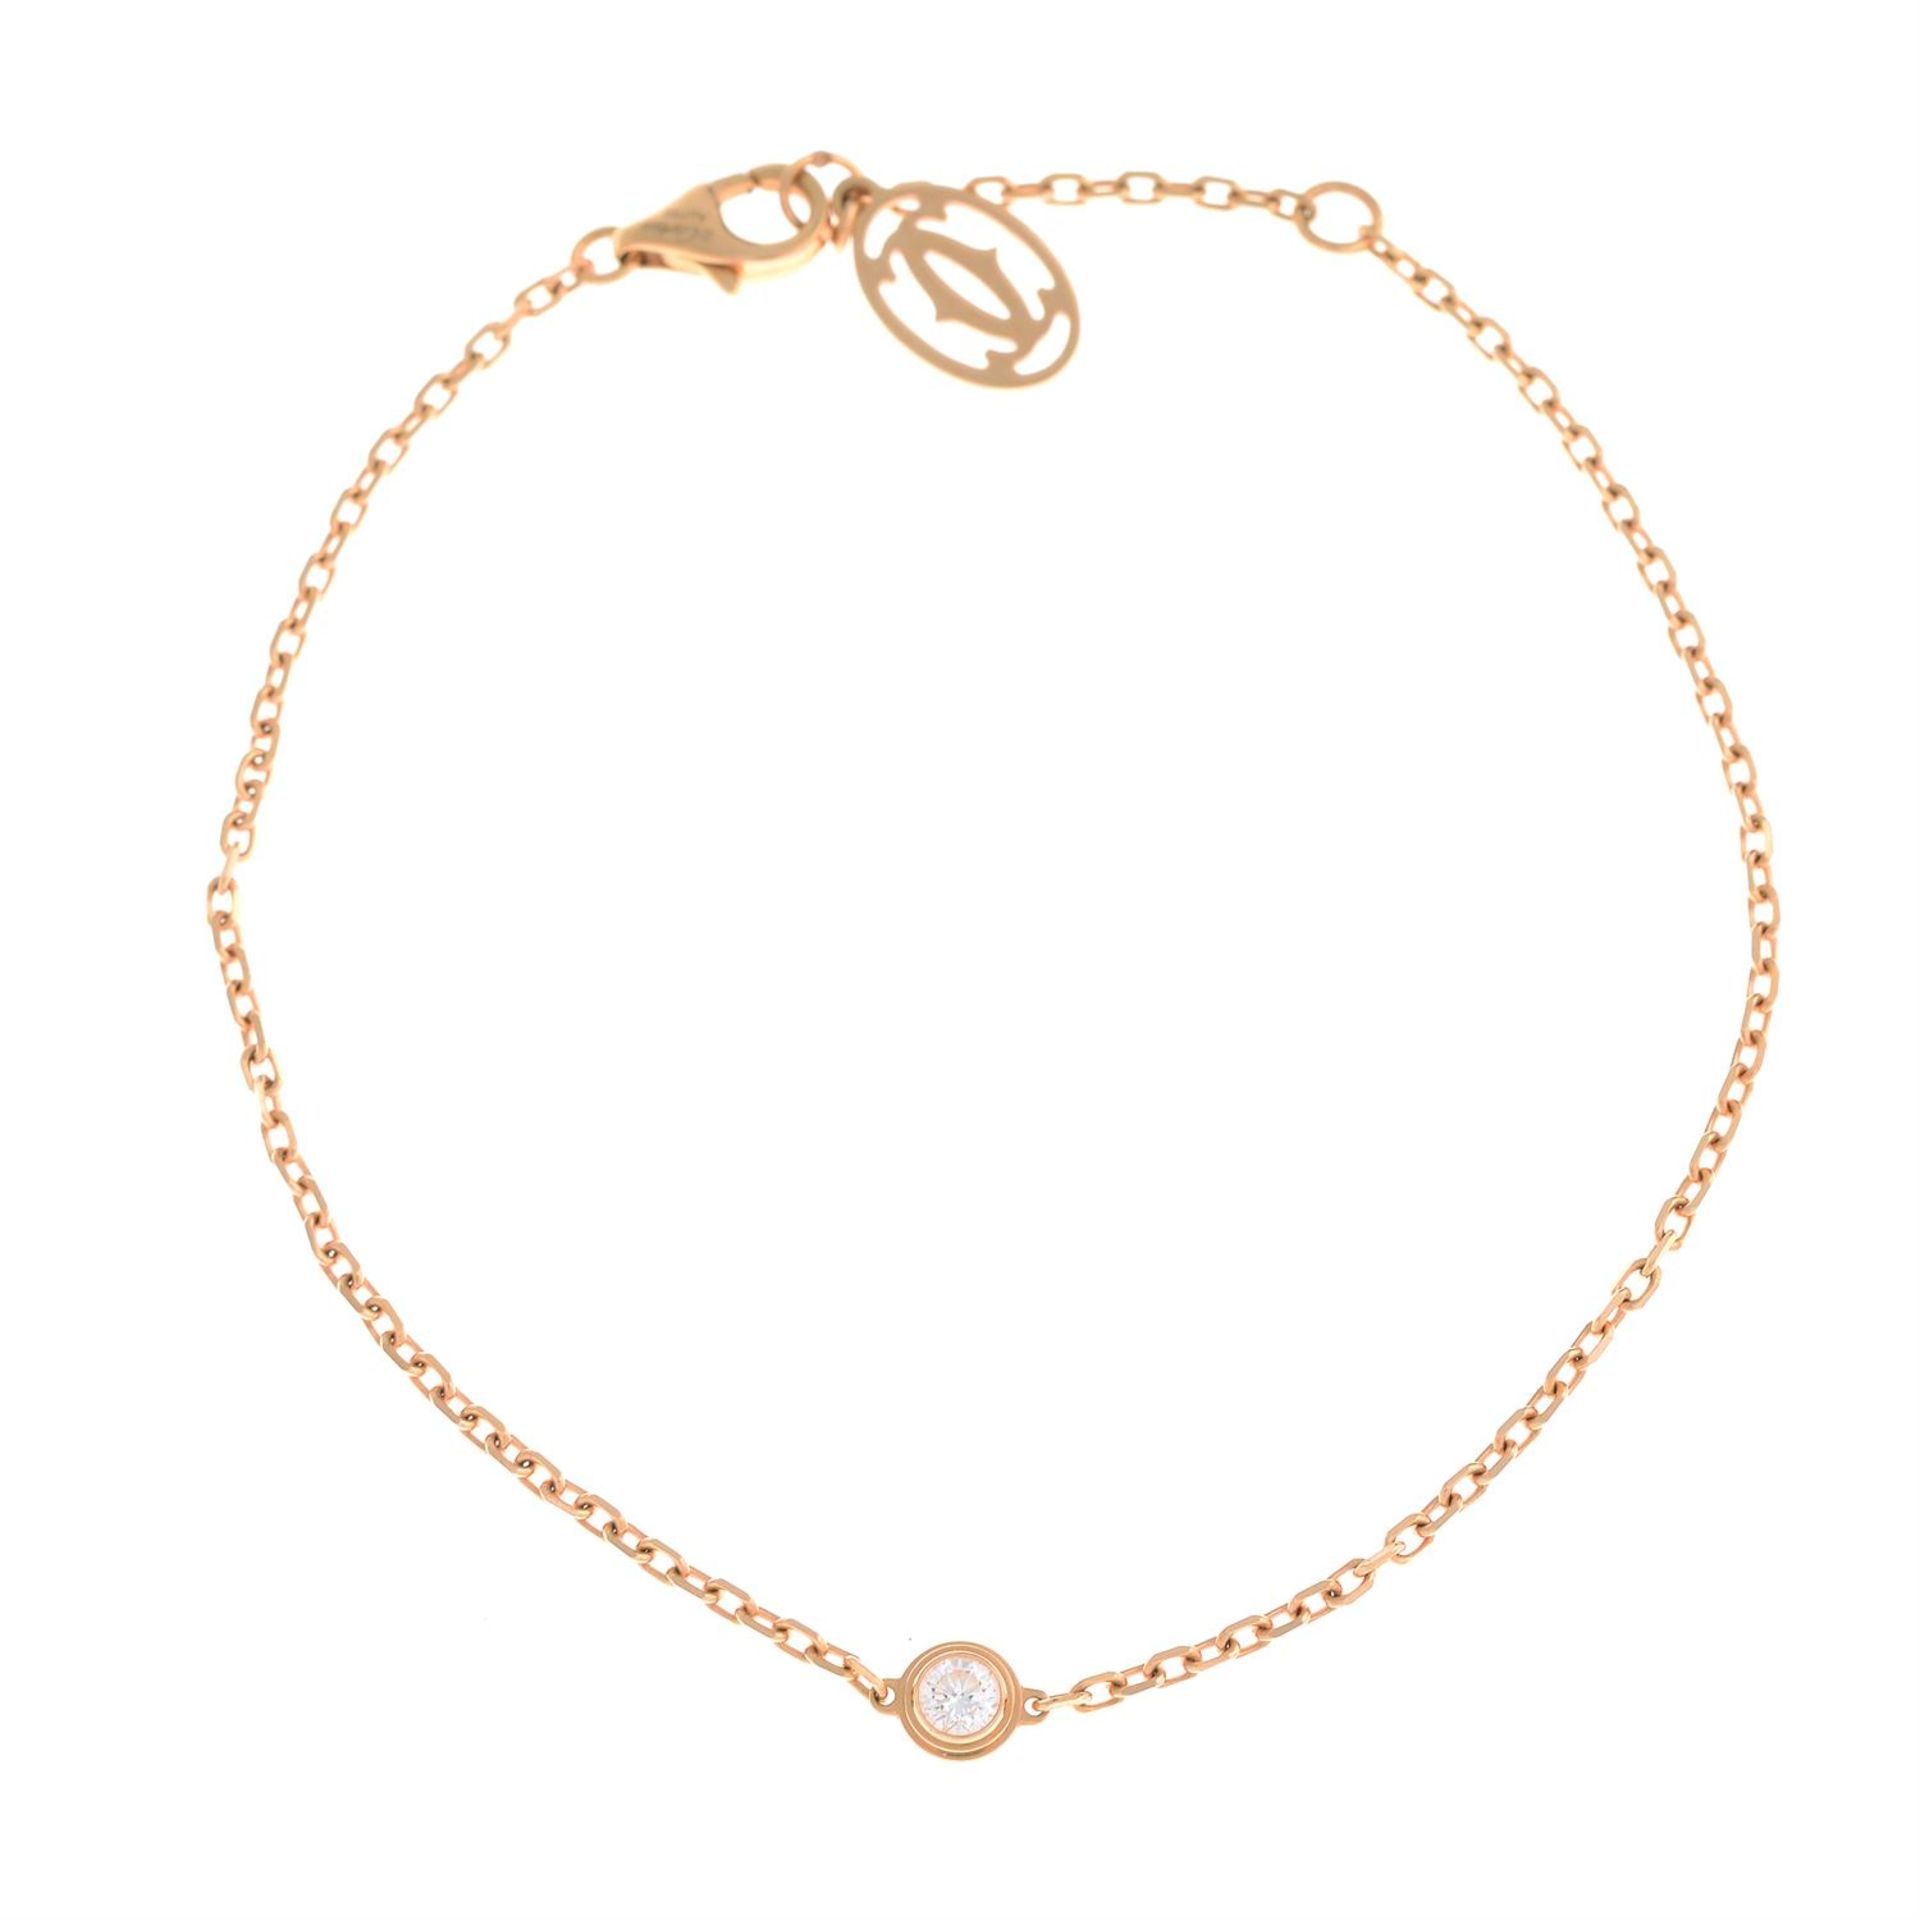 'D'Amour' diamond accent bracelet, by Cartier